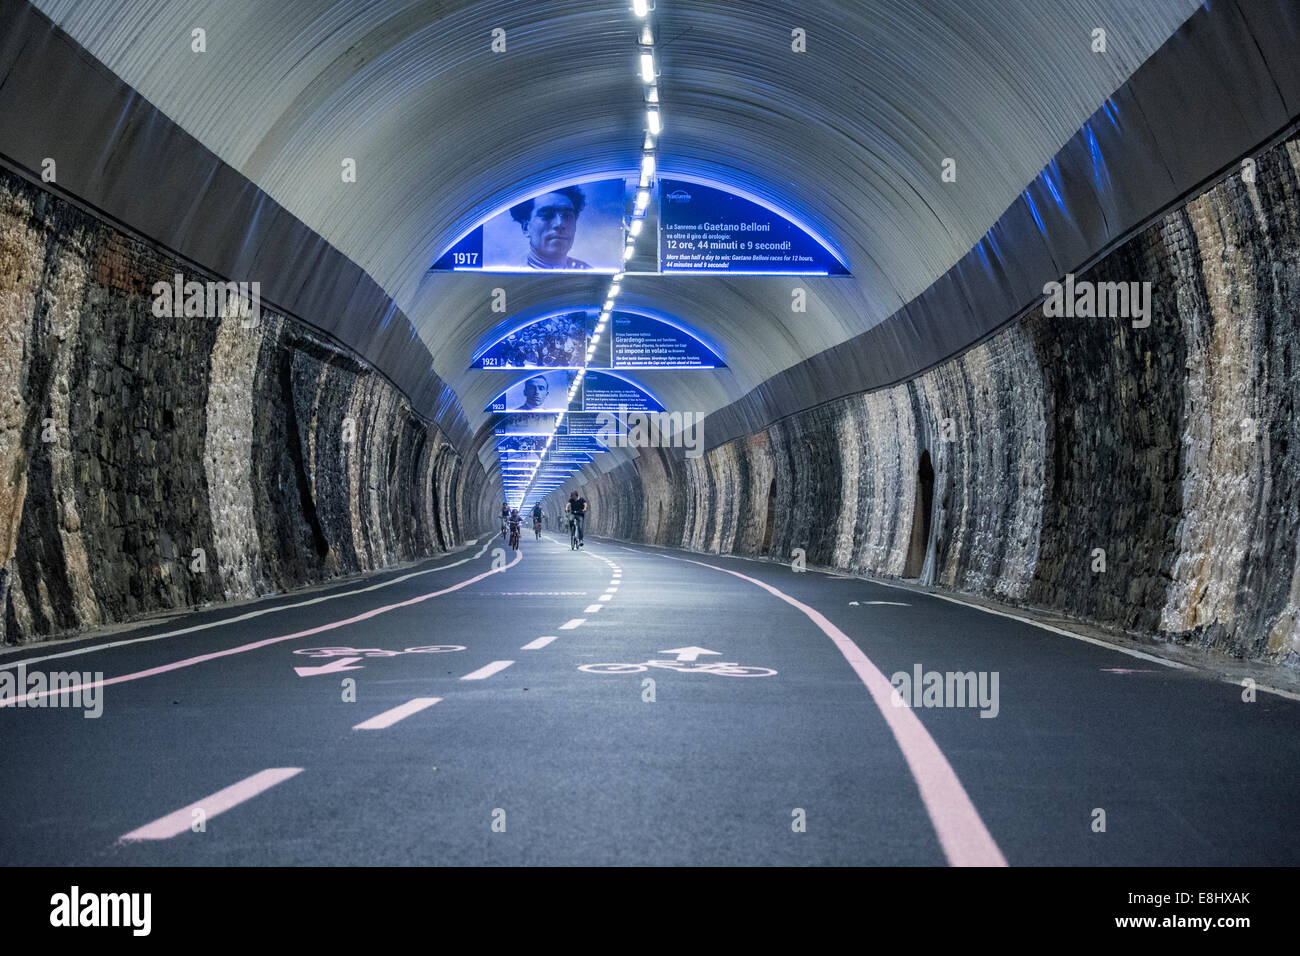 Capo Nero tunnel with Giro d'Italia decoration, Riviera dei Fiori, San Remo, Liguria, Italy Stock Photo